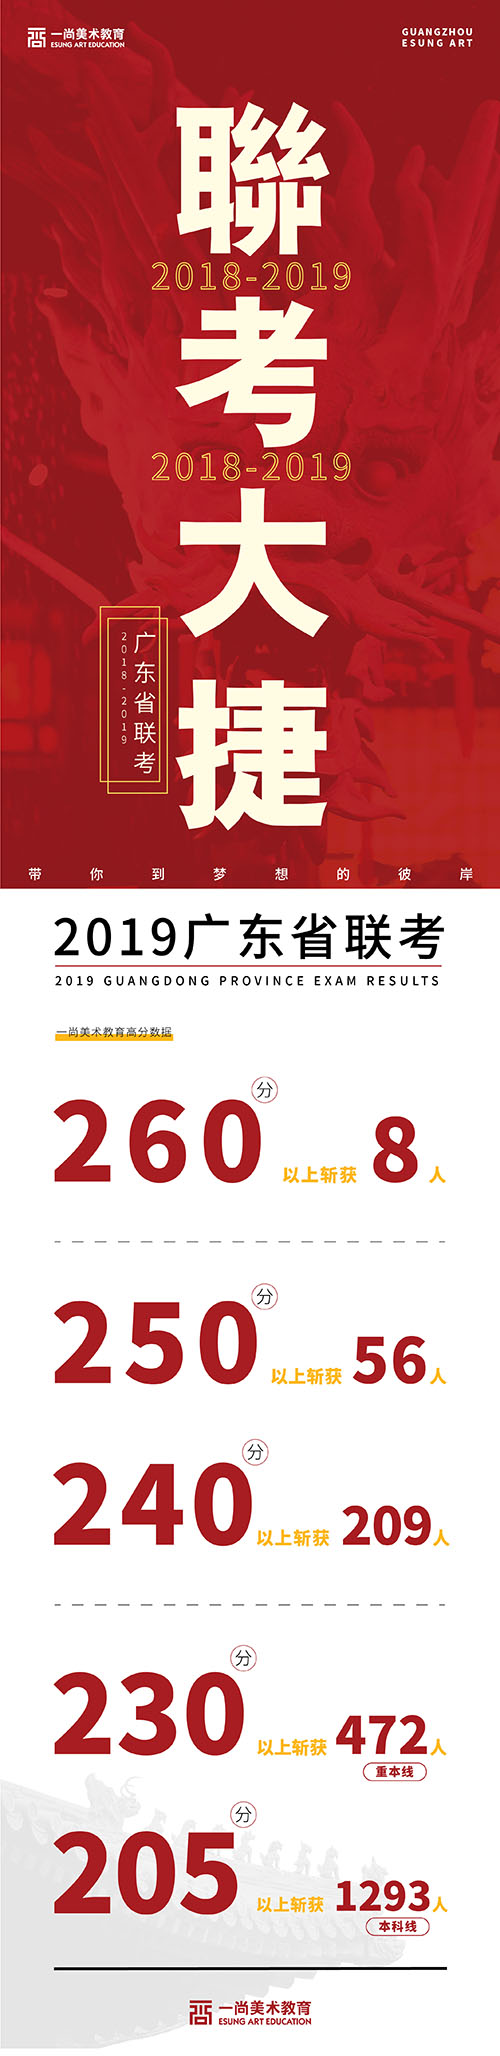 看看广州排名前十画室的2019年联考成绩榜 绝对震撼！5